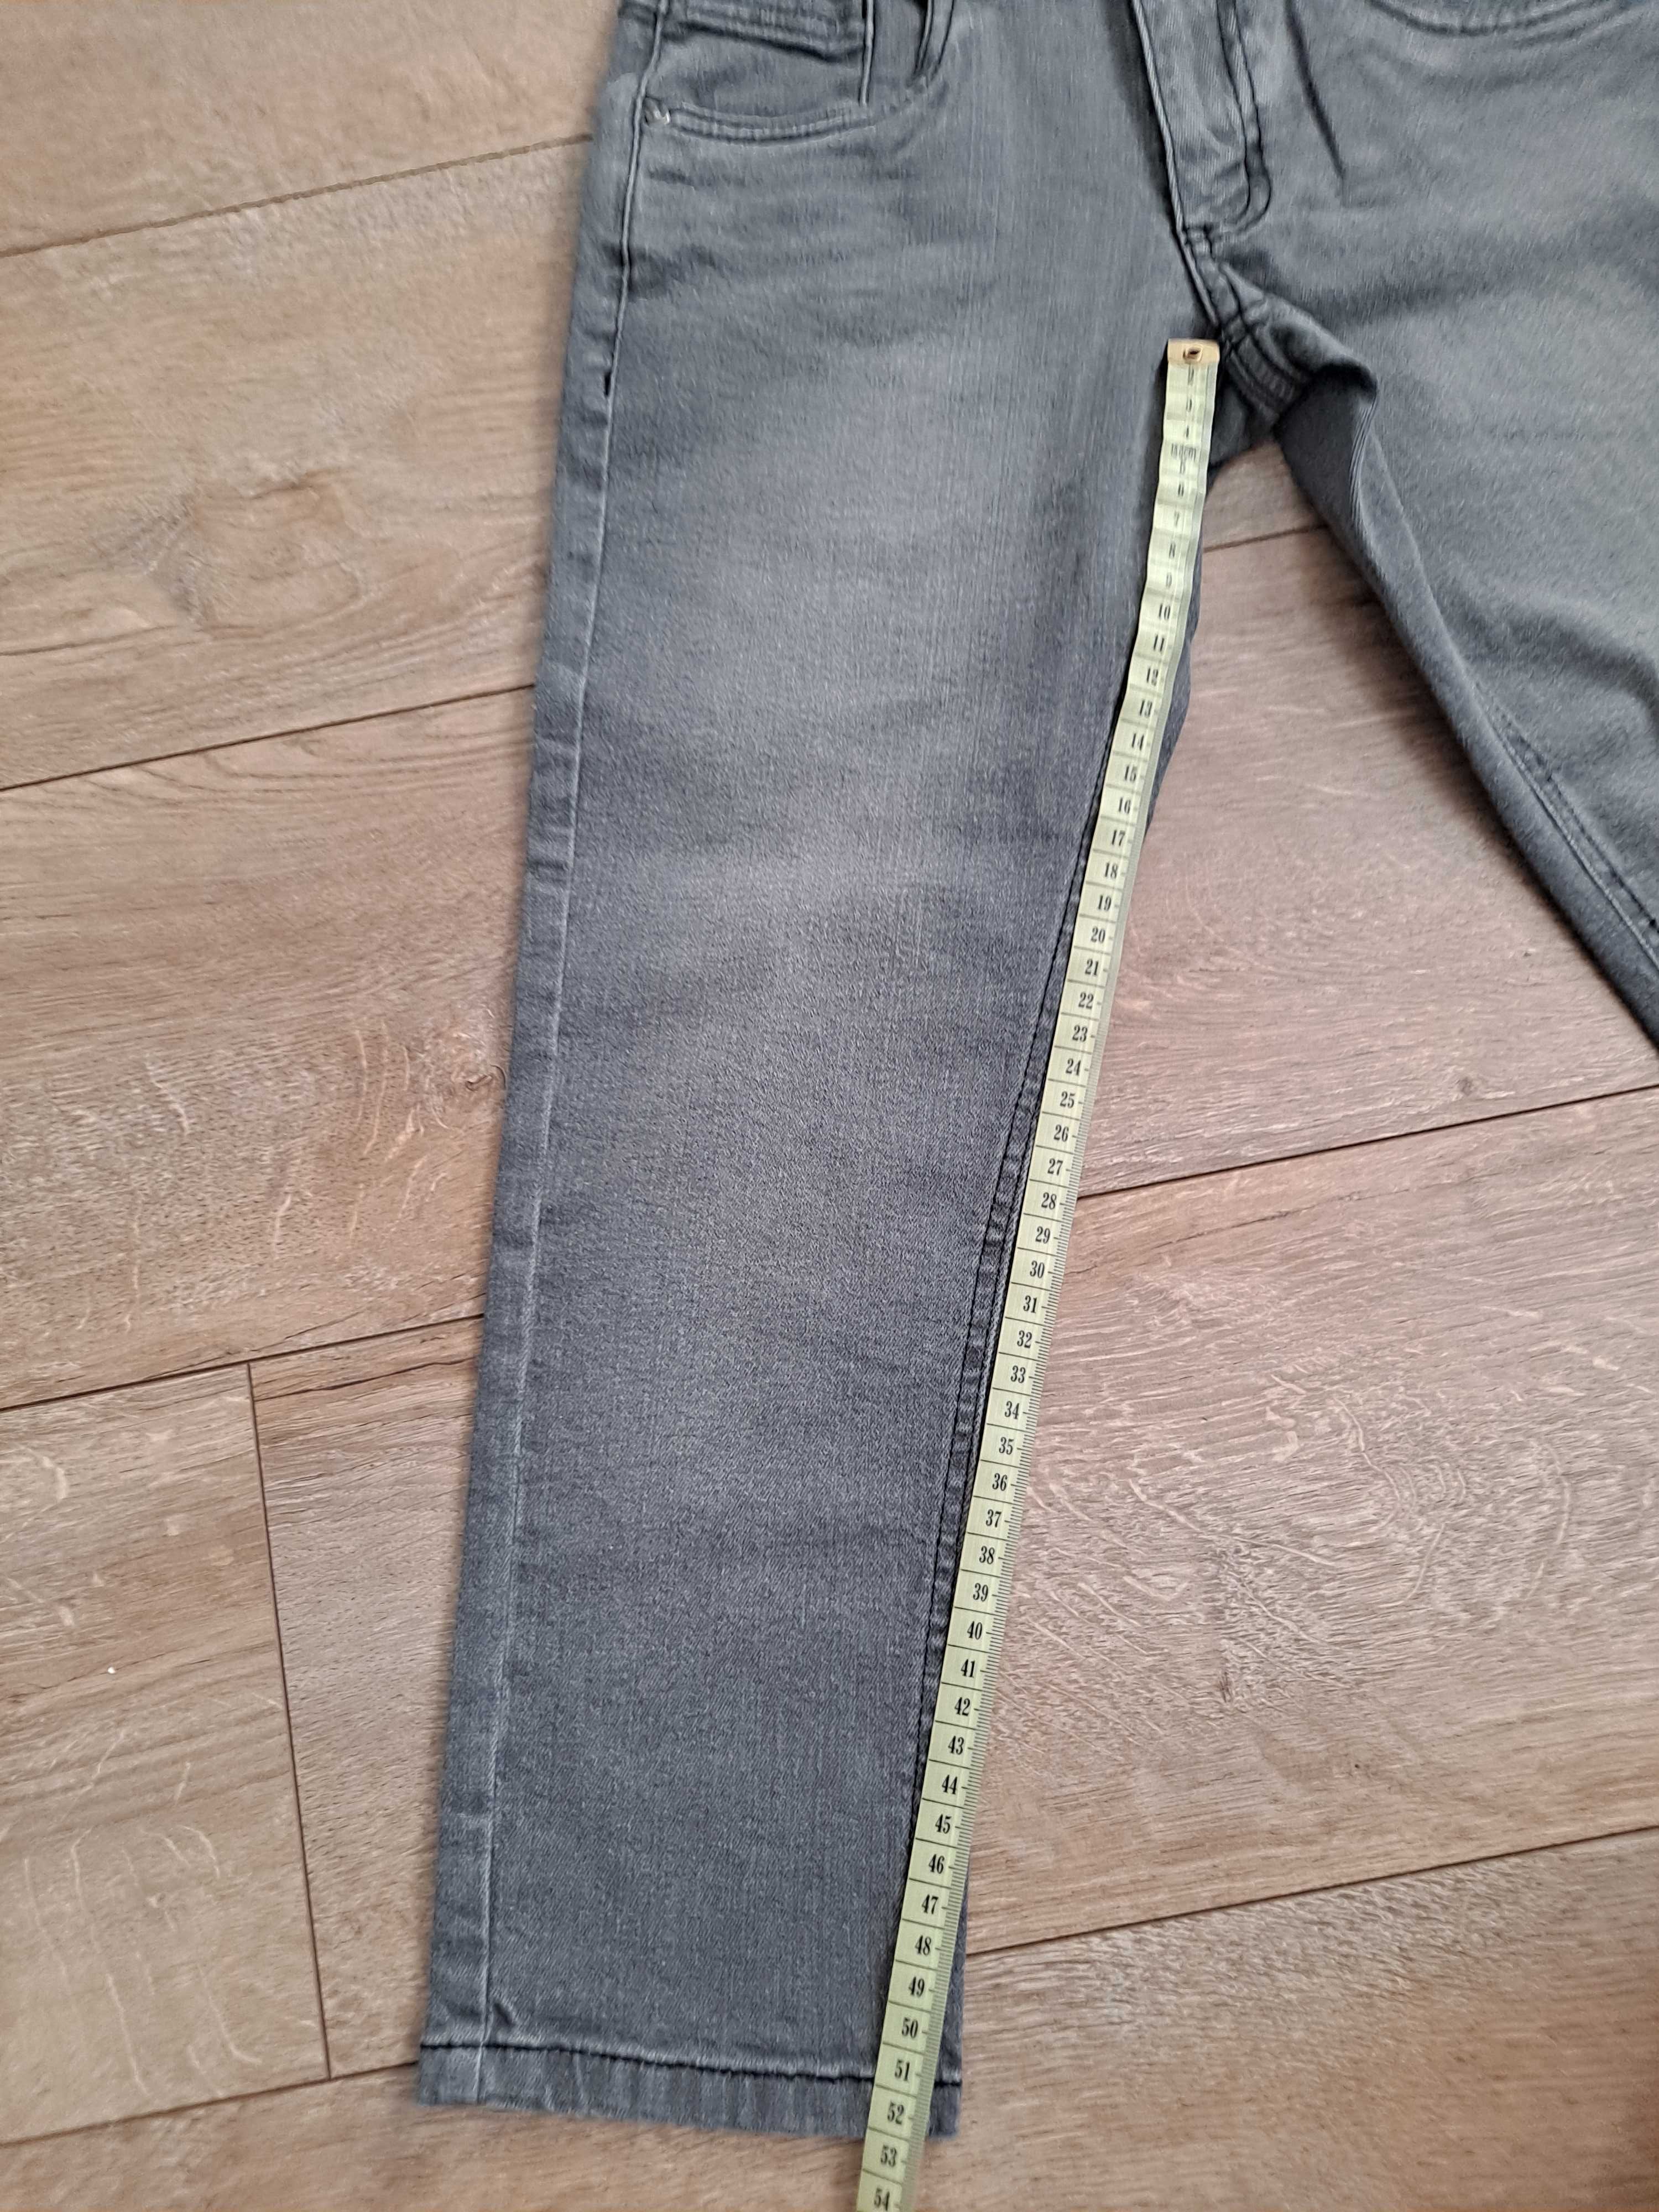 Spodnie szare jeansowe r. 122-128